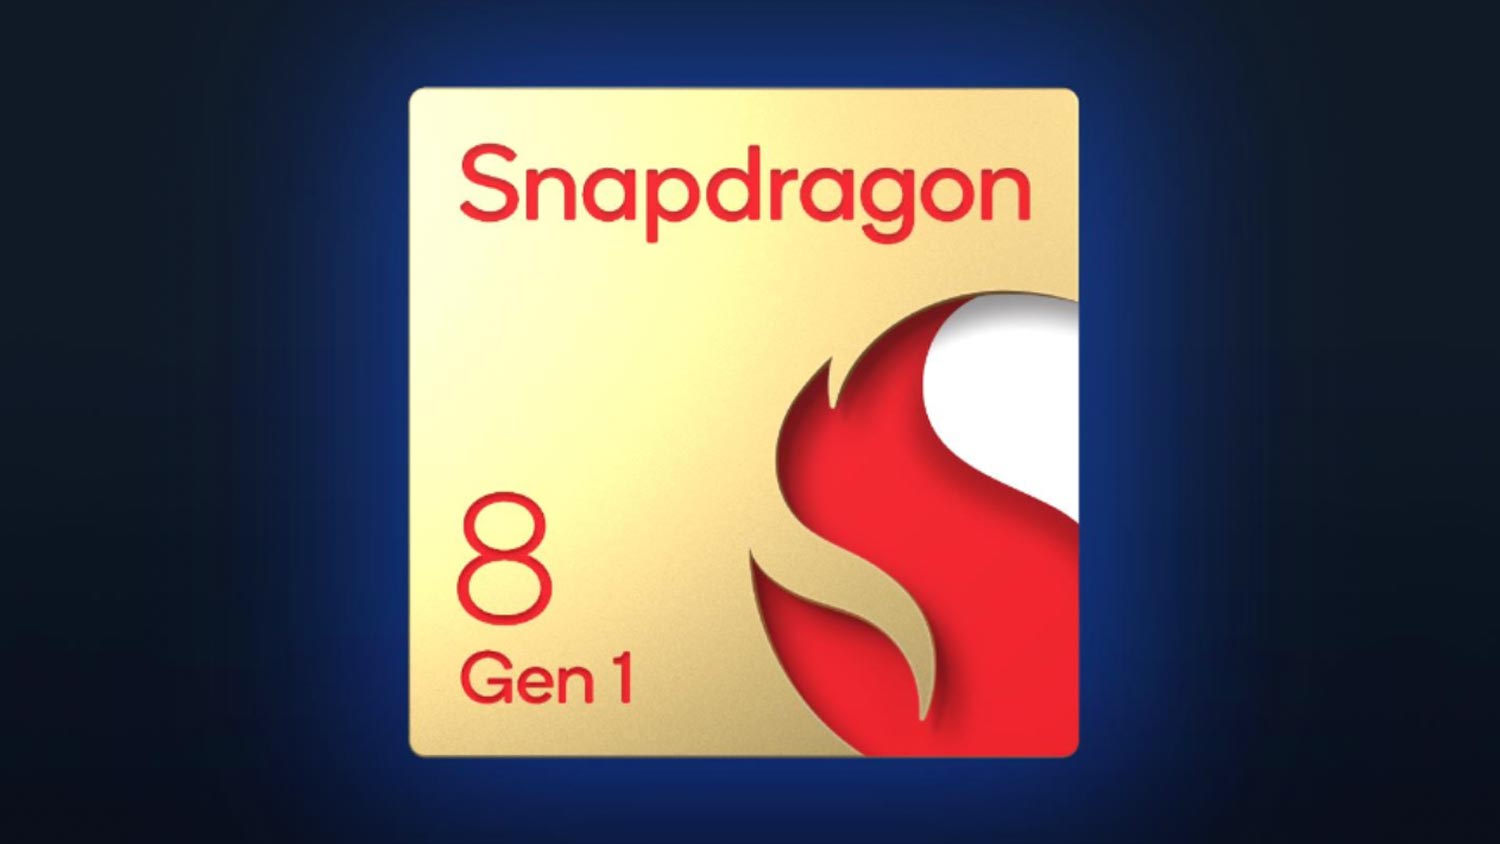 Markah Penanda Aras Menunjukkan Snapdragon 8 Gen 1 Mampu Bersaing Dengan Apple A15 Bionic